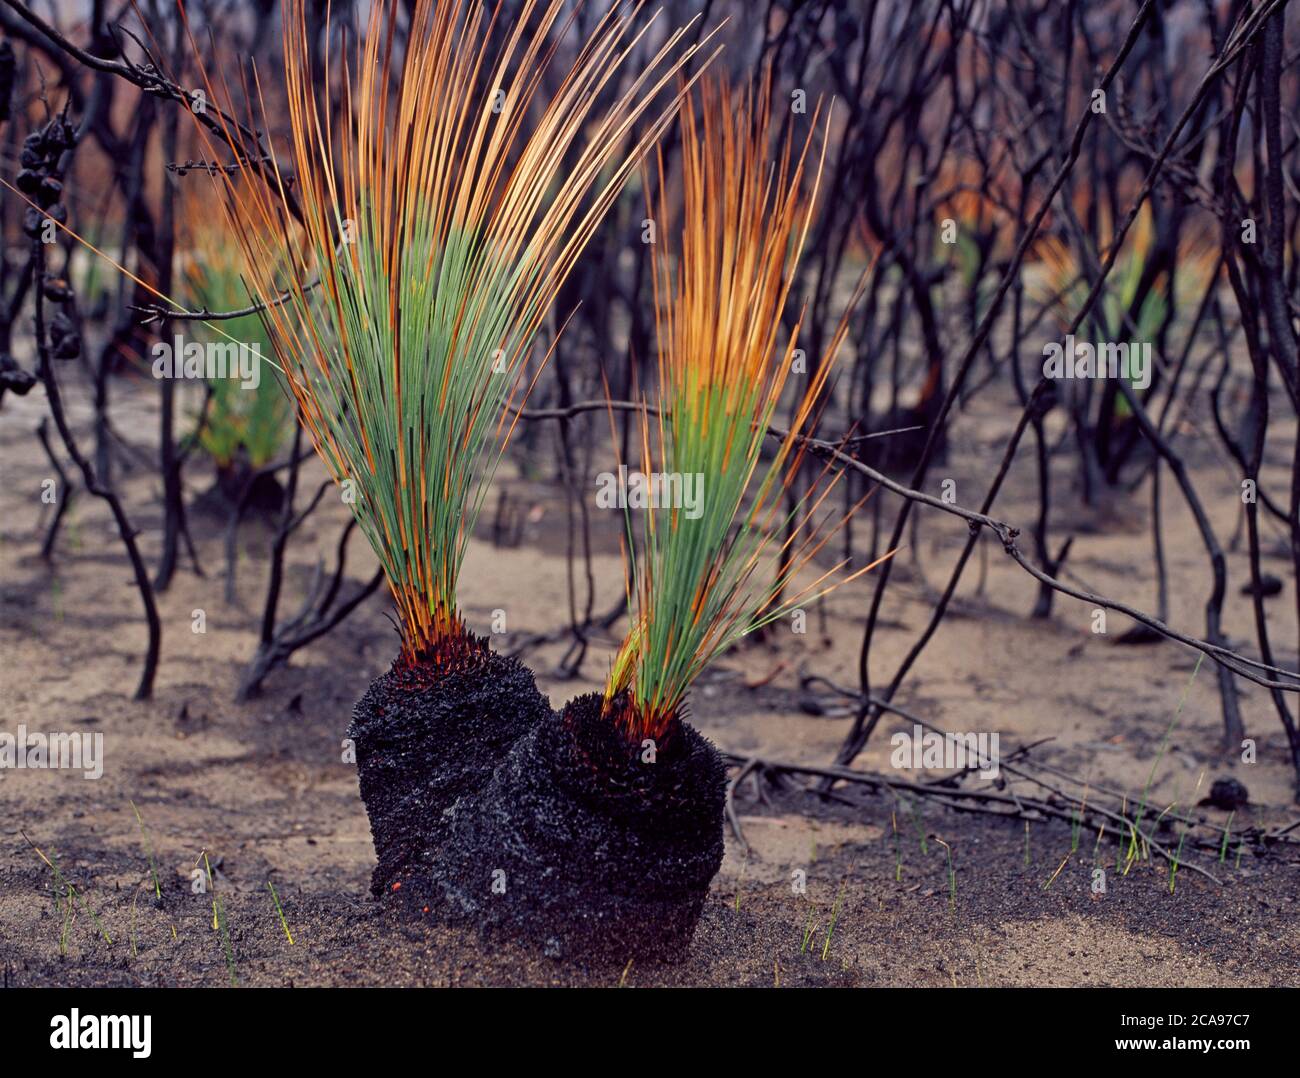 Los árboles de pasto quemados (Xanthorrhoea australis) se regeneran después de incendios de matorrales en Nueva Gales del Sur, Australia Foto de stock